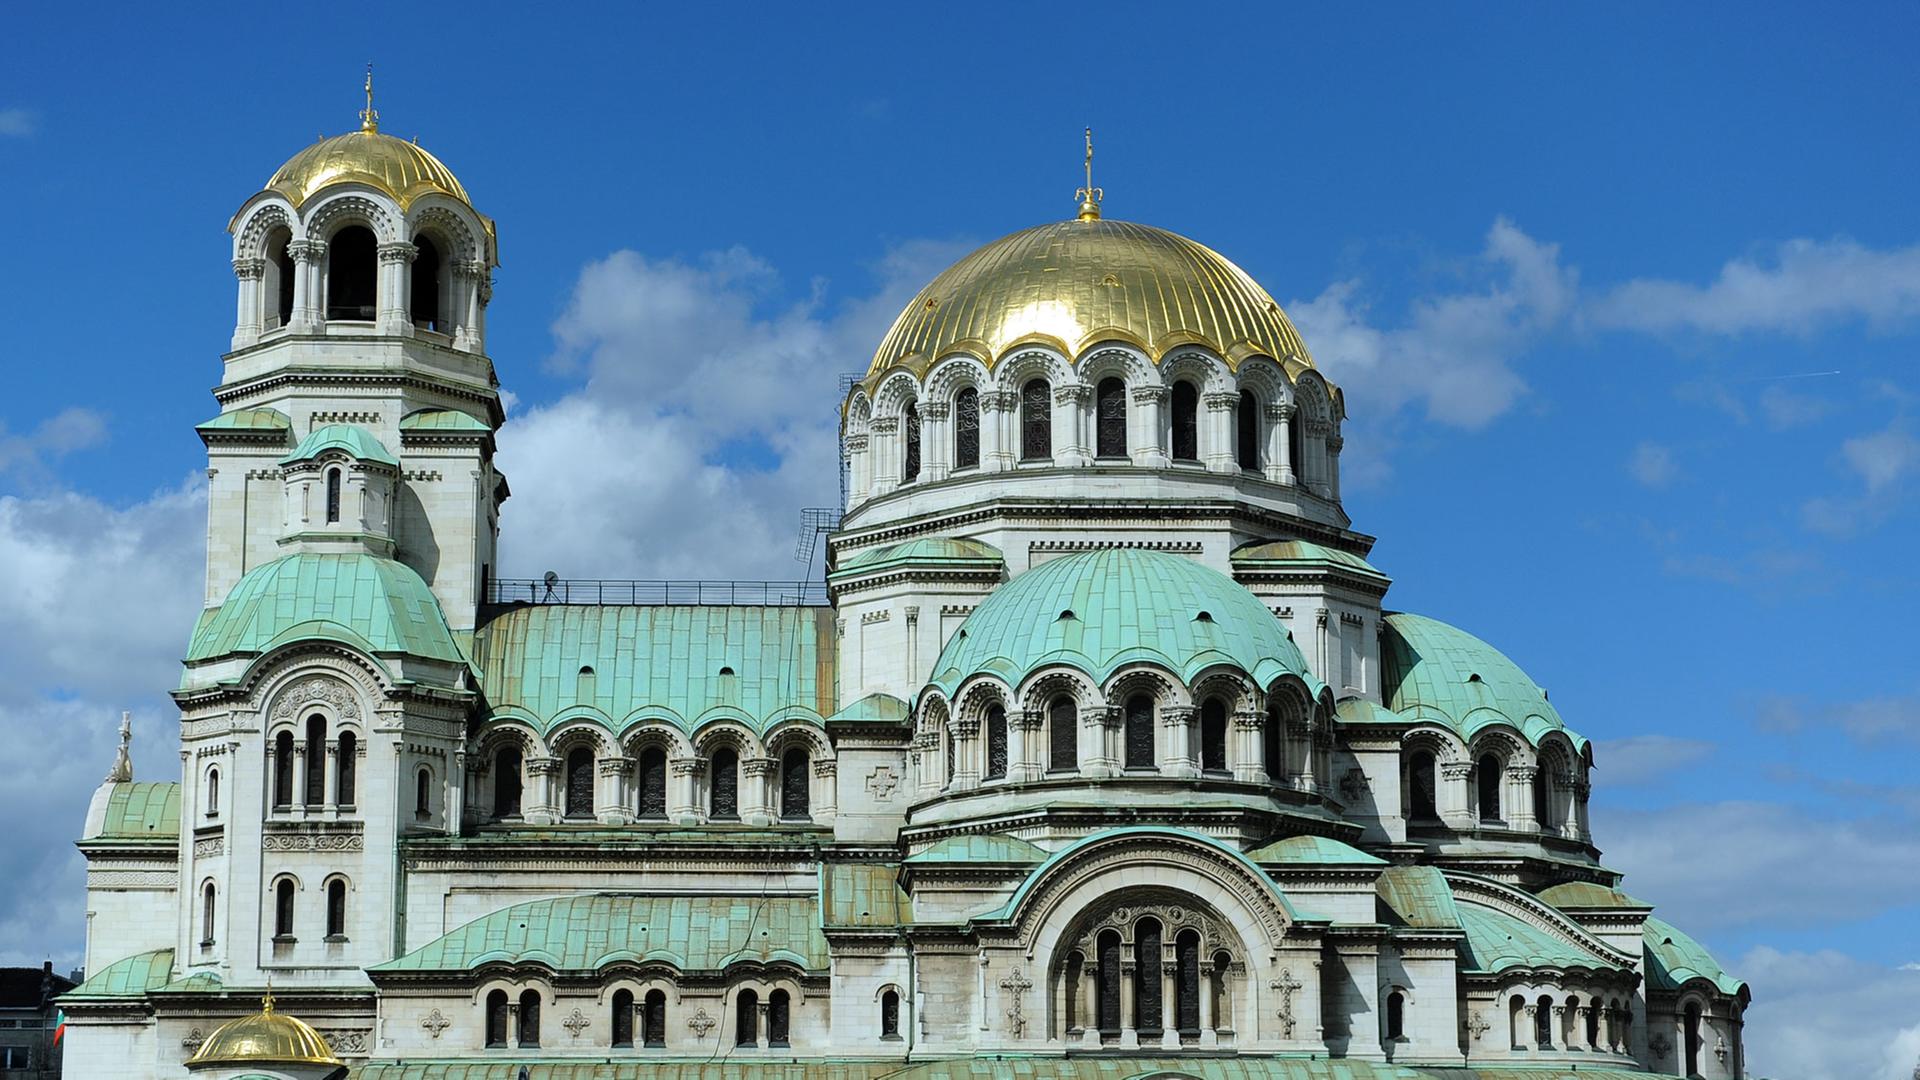 Blick auf die Alexander-Newski-Kathedrale in Sofia, eines der Wahrzeichen der bulgarischen Hauptstadt